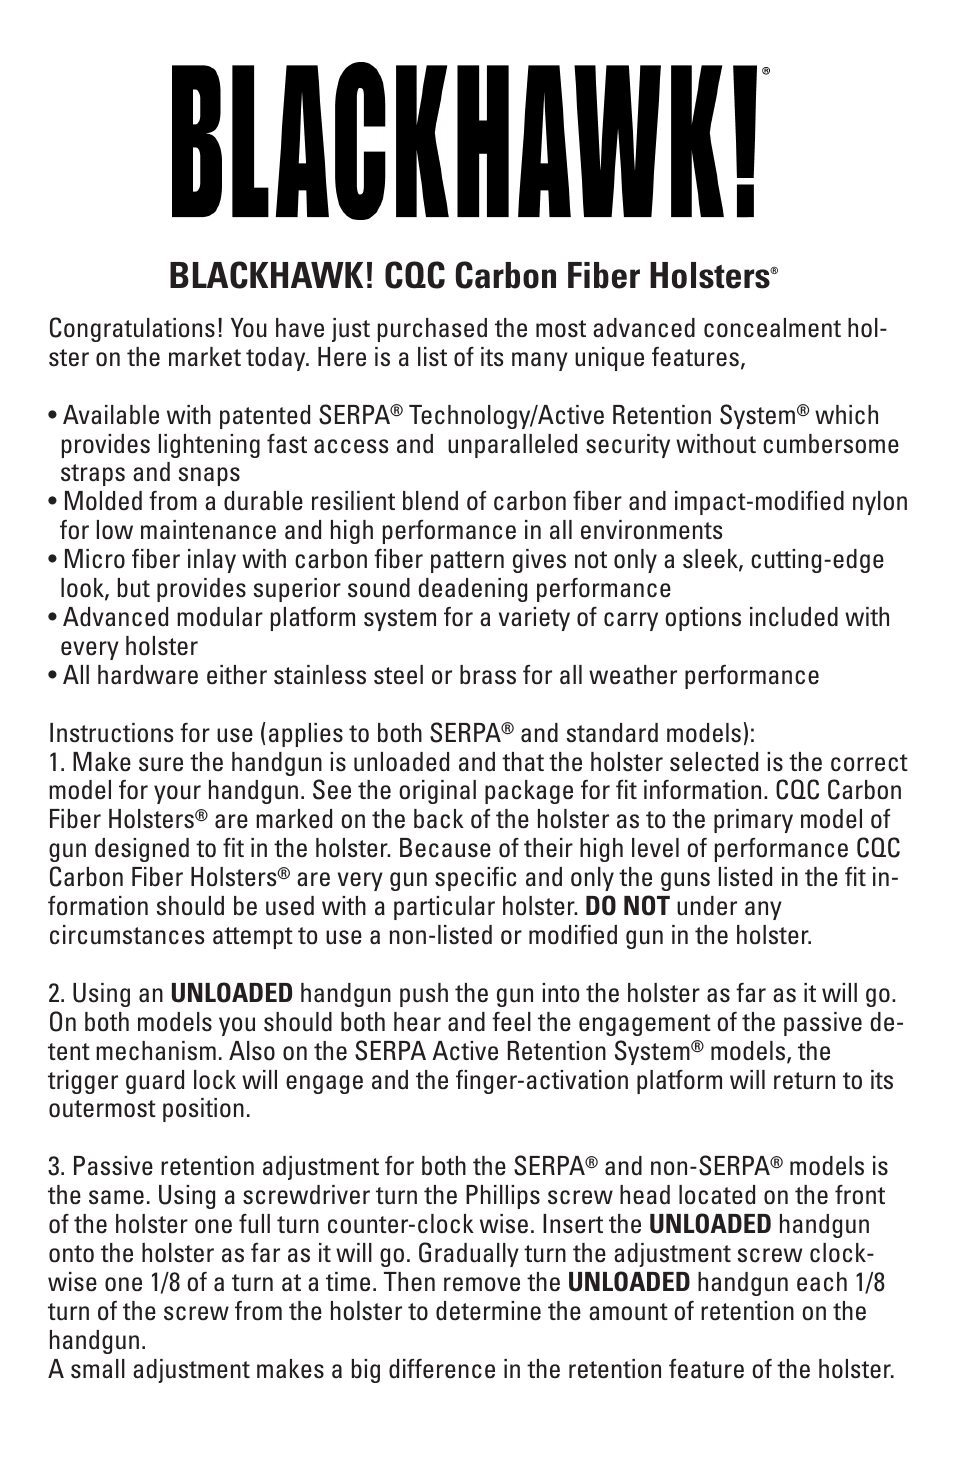 CQC Carbon Fiber Holsters